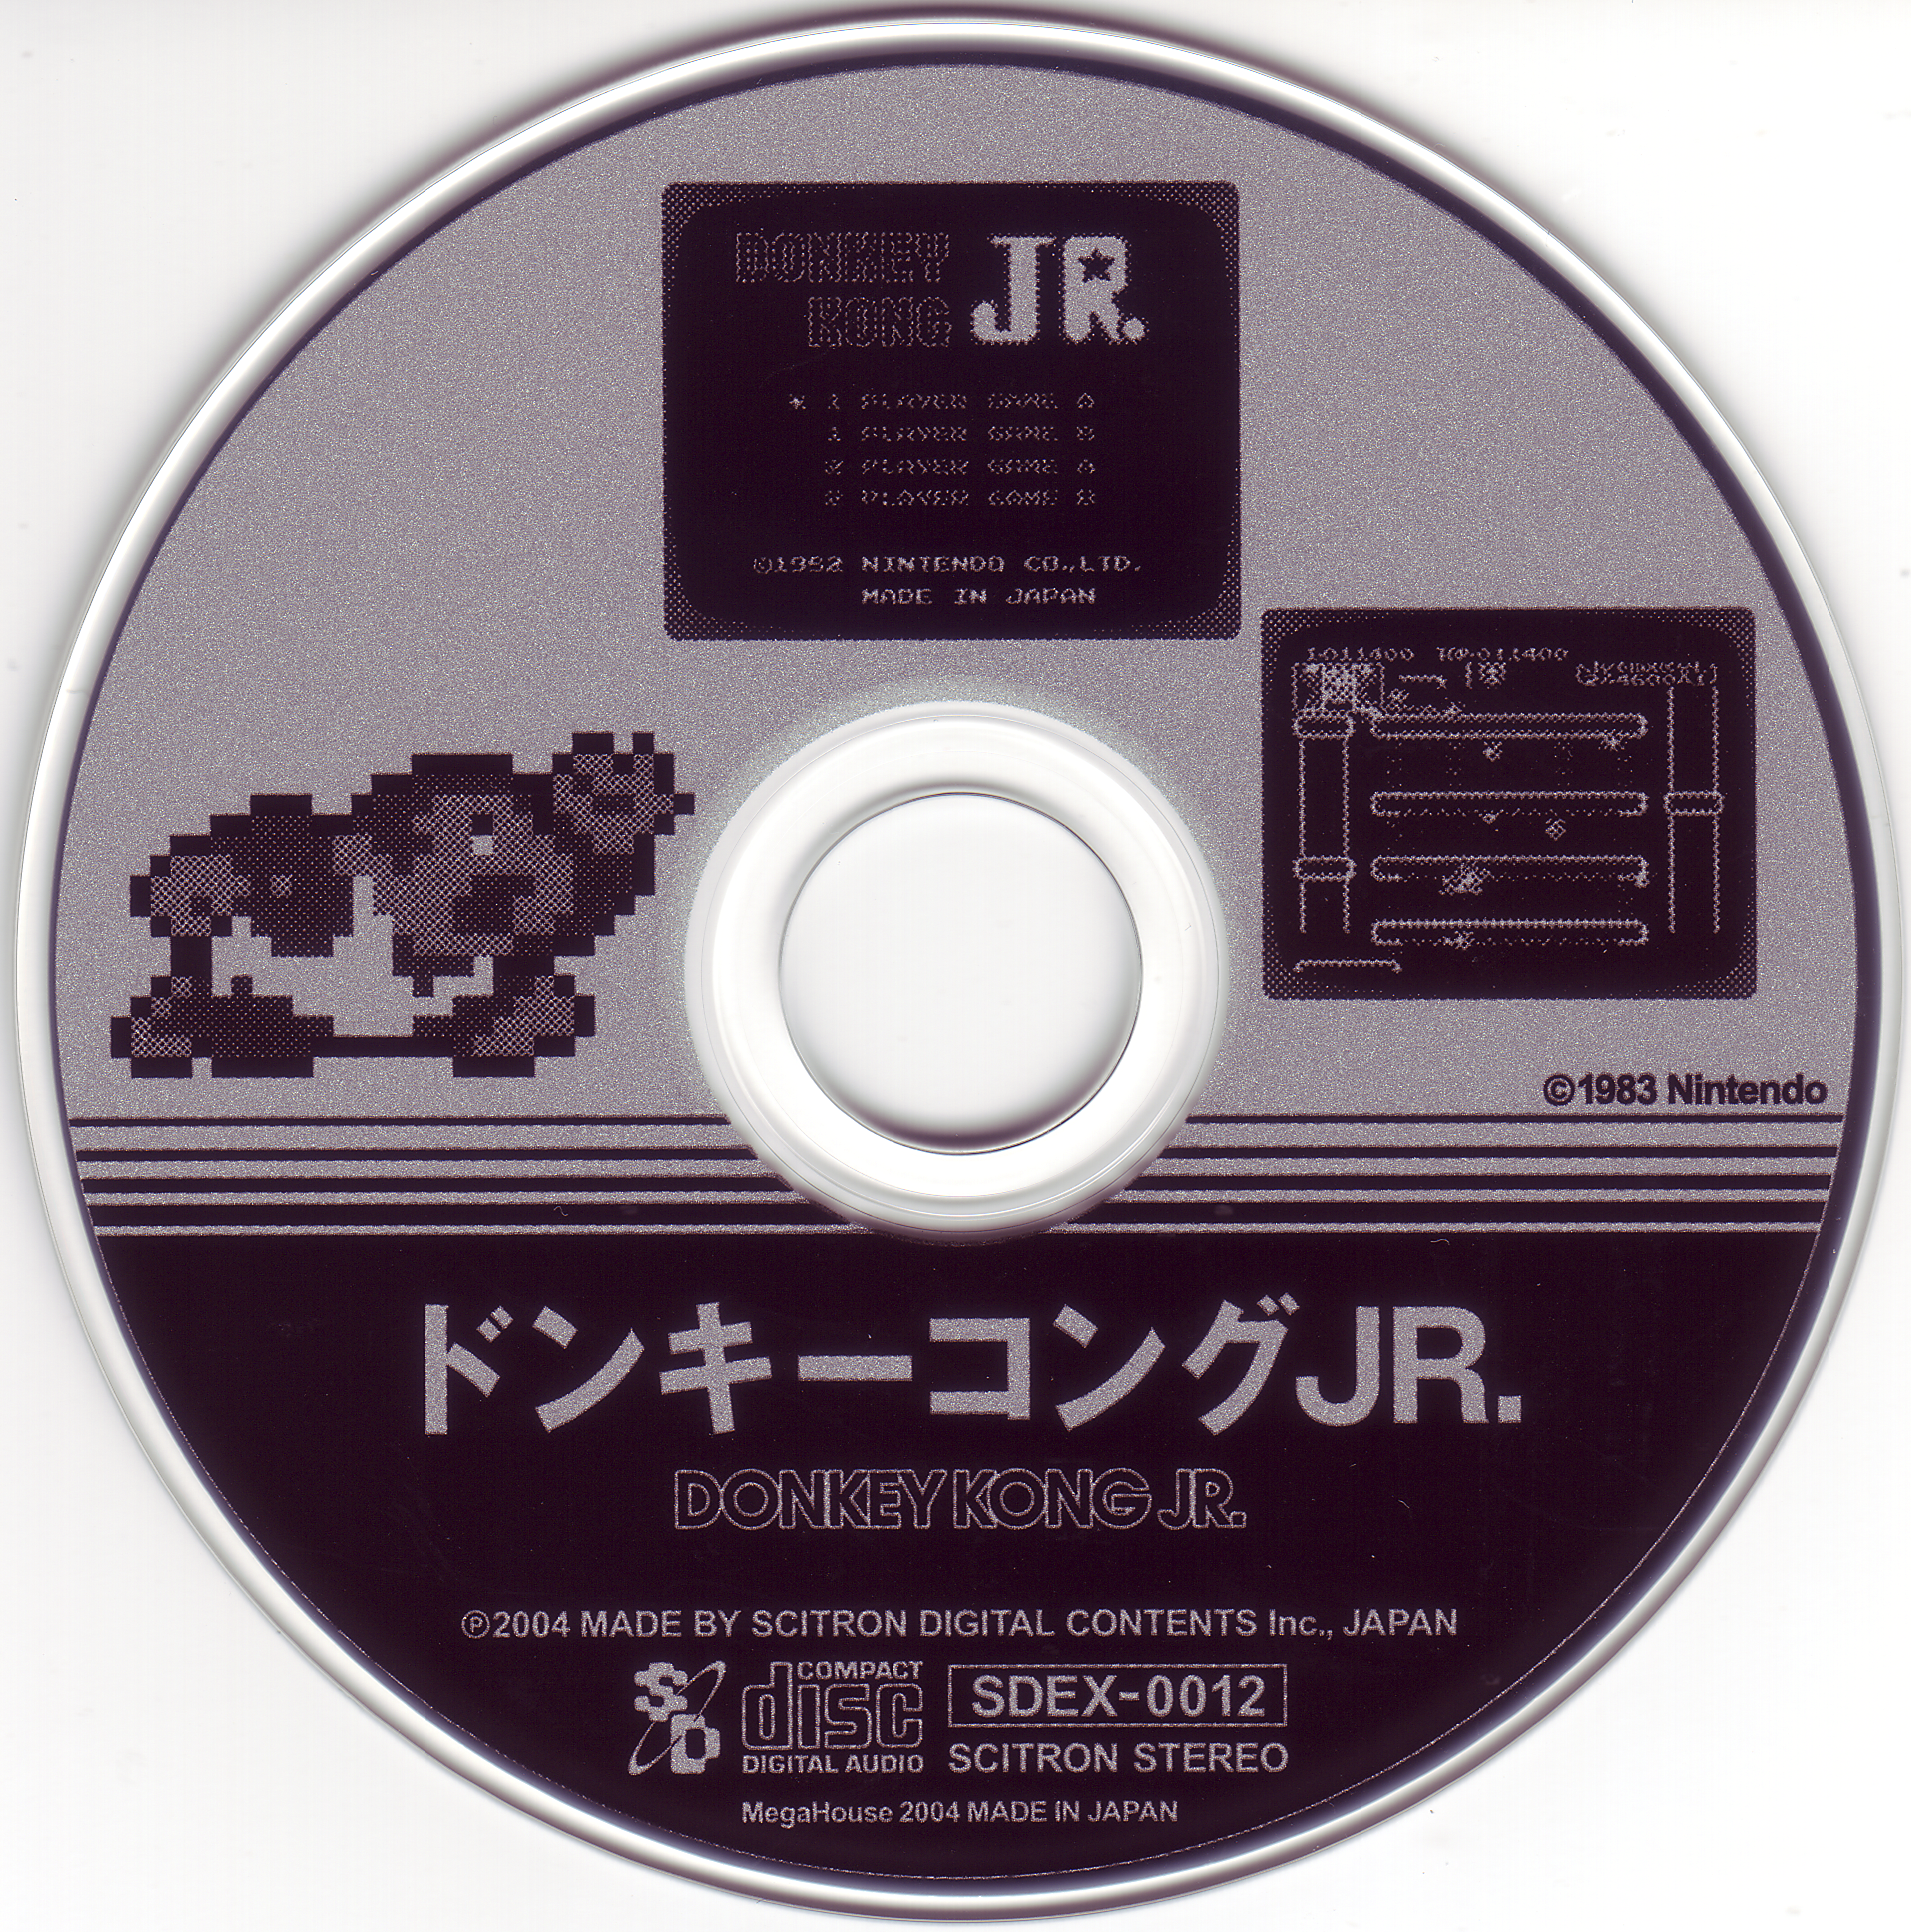 Game Sound Museum Famicom Edition Flac Files